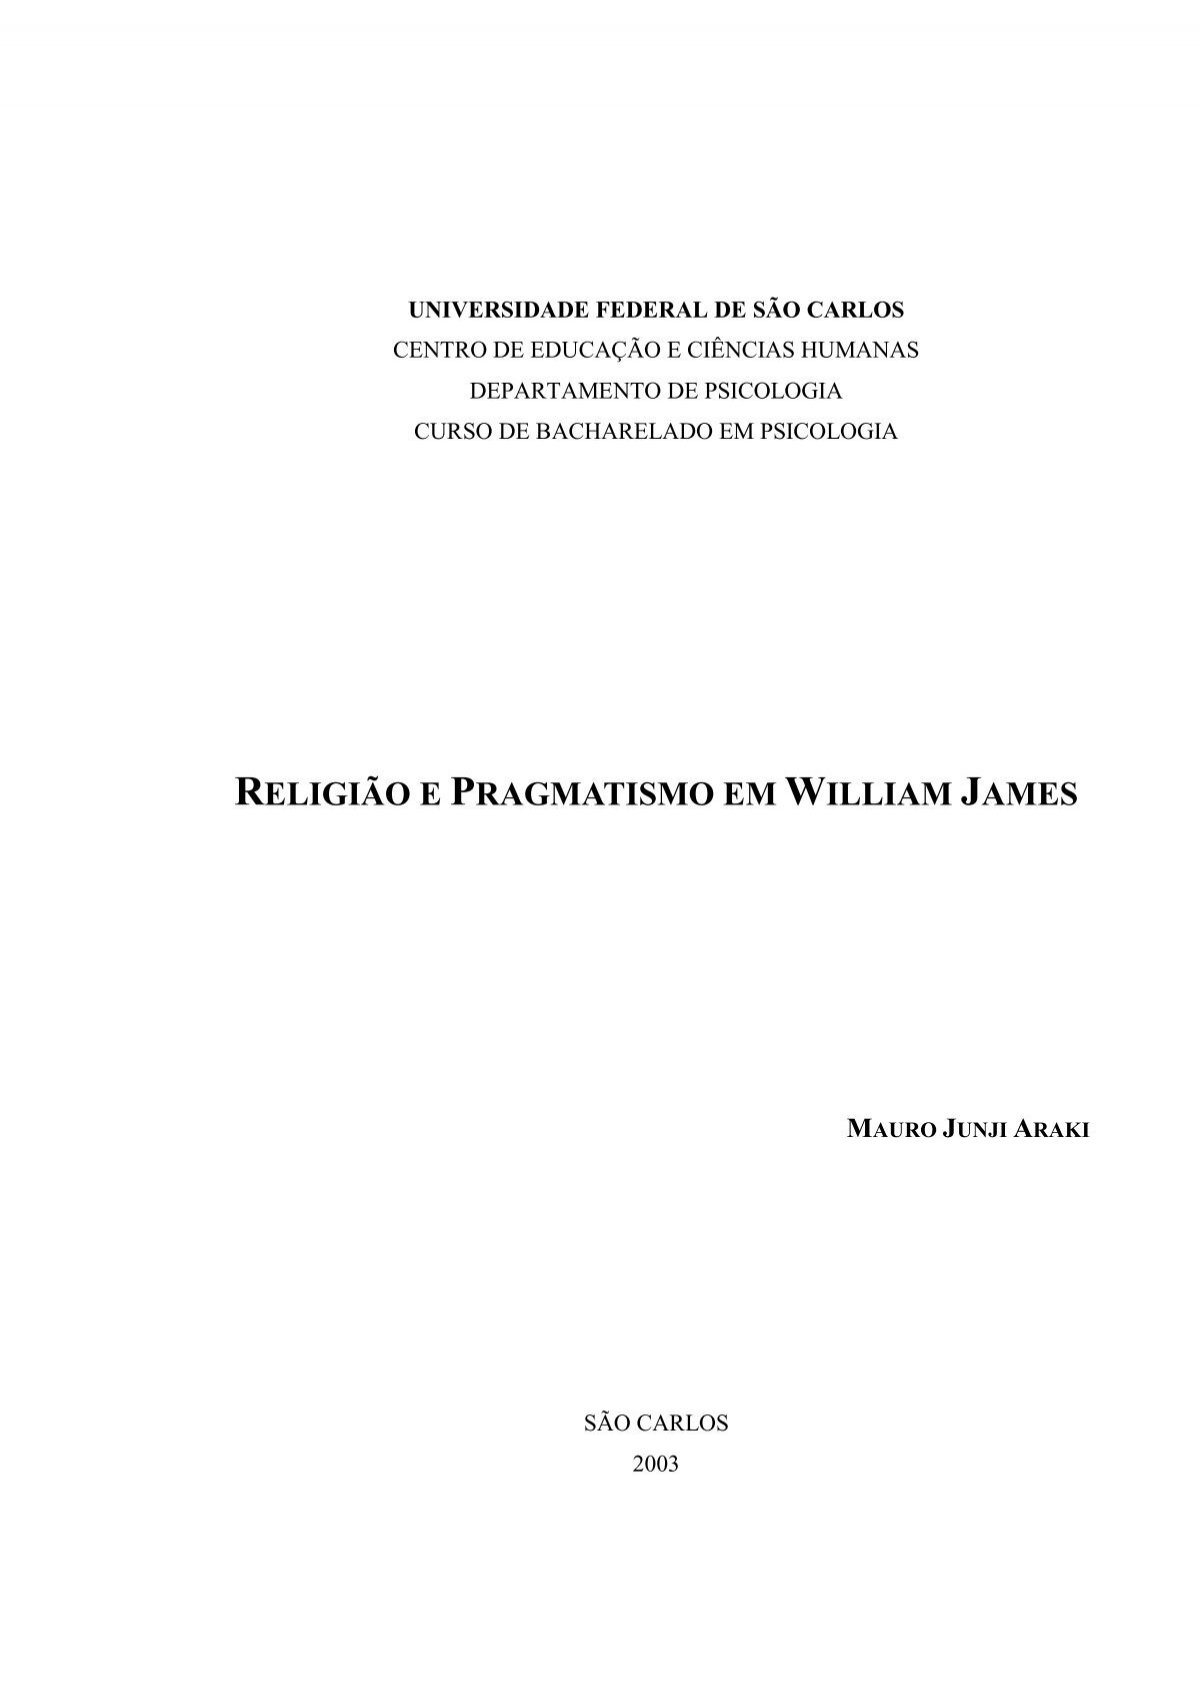 William James - Pesquisas - Psicologia